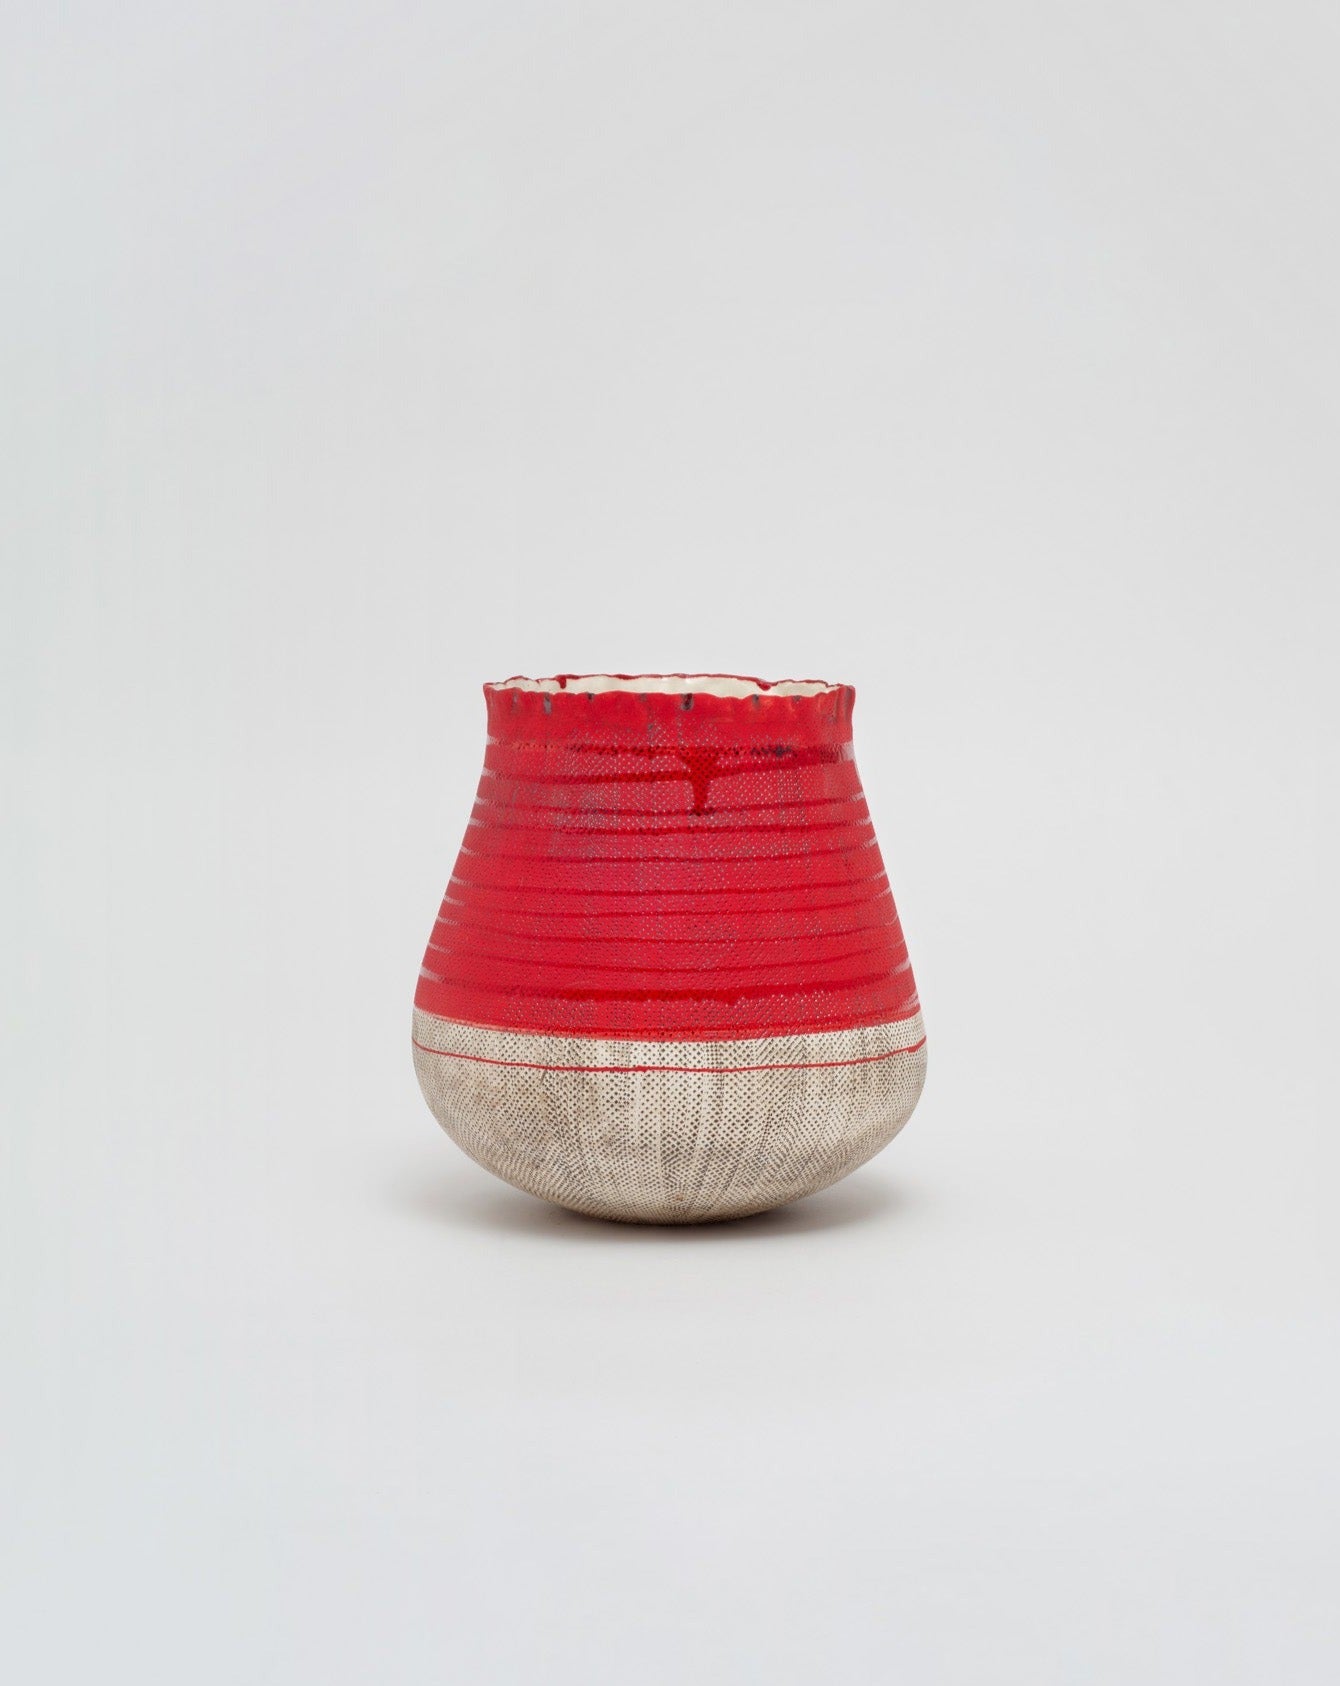 Handpinched Red Vase - kombi